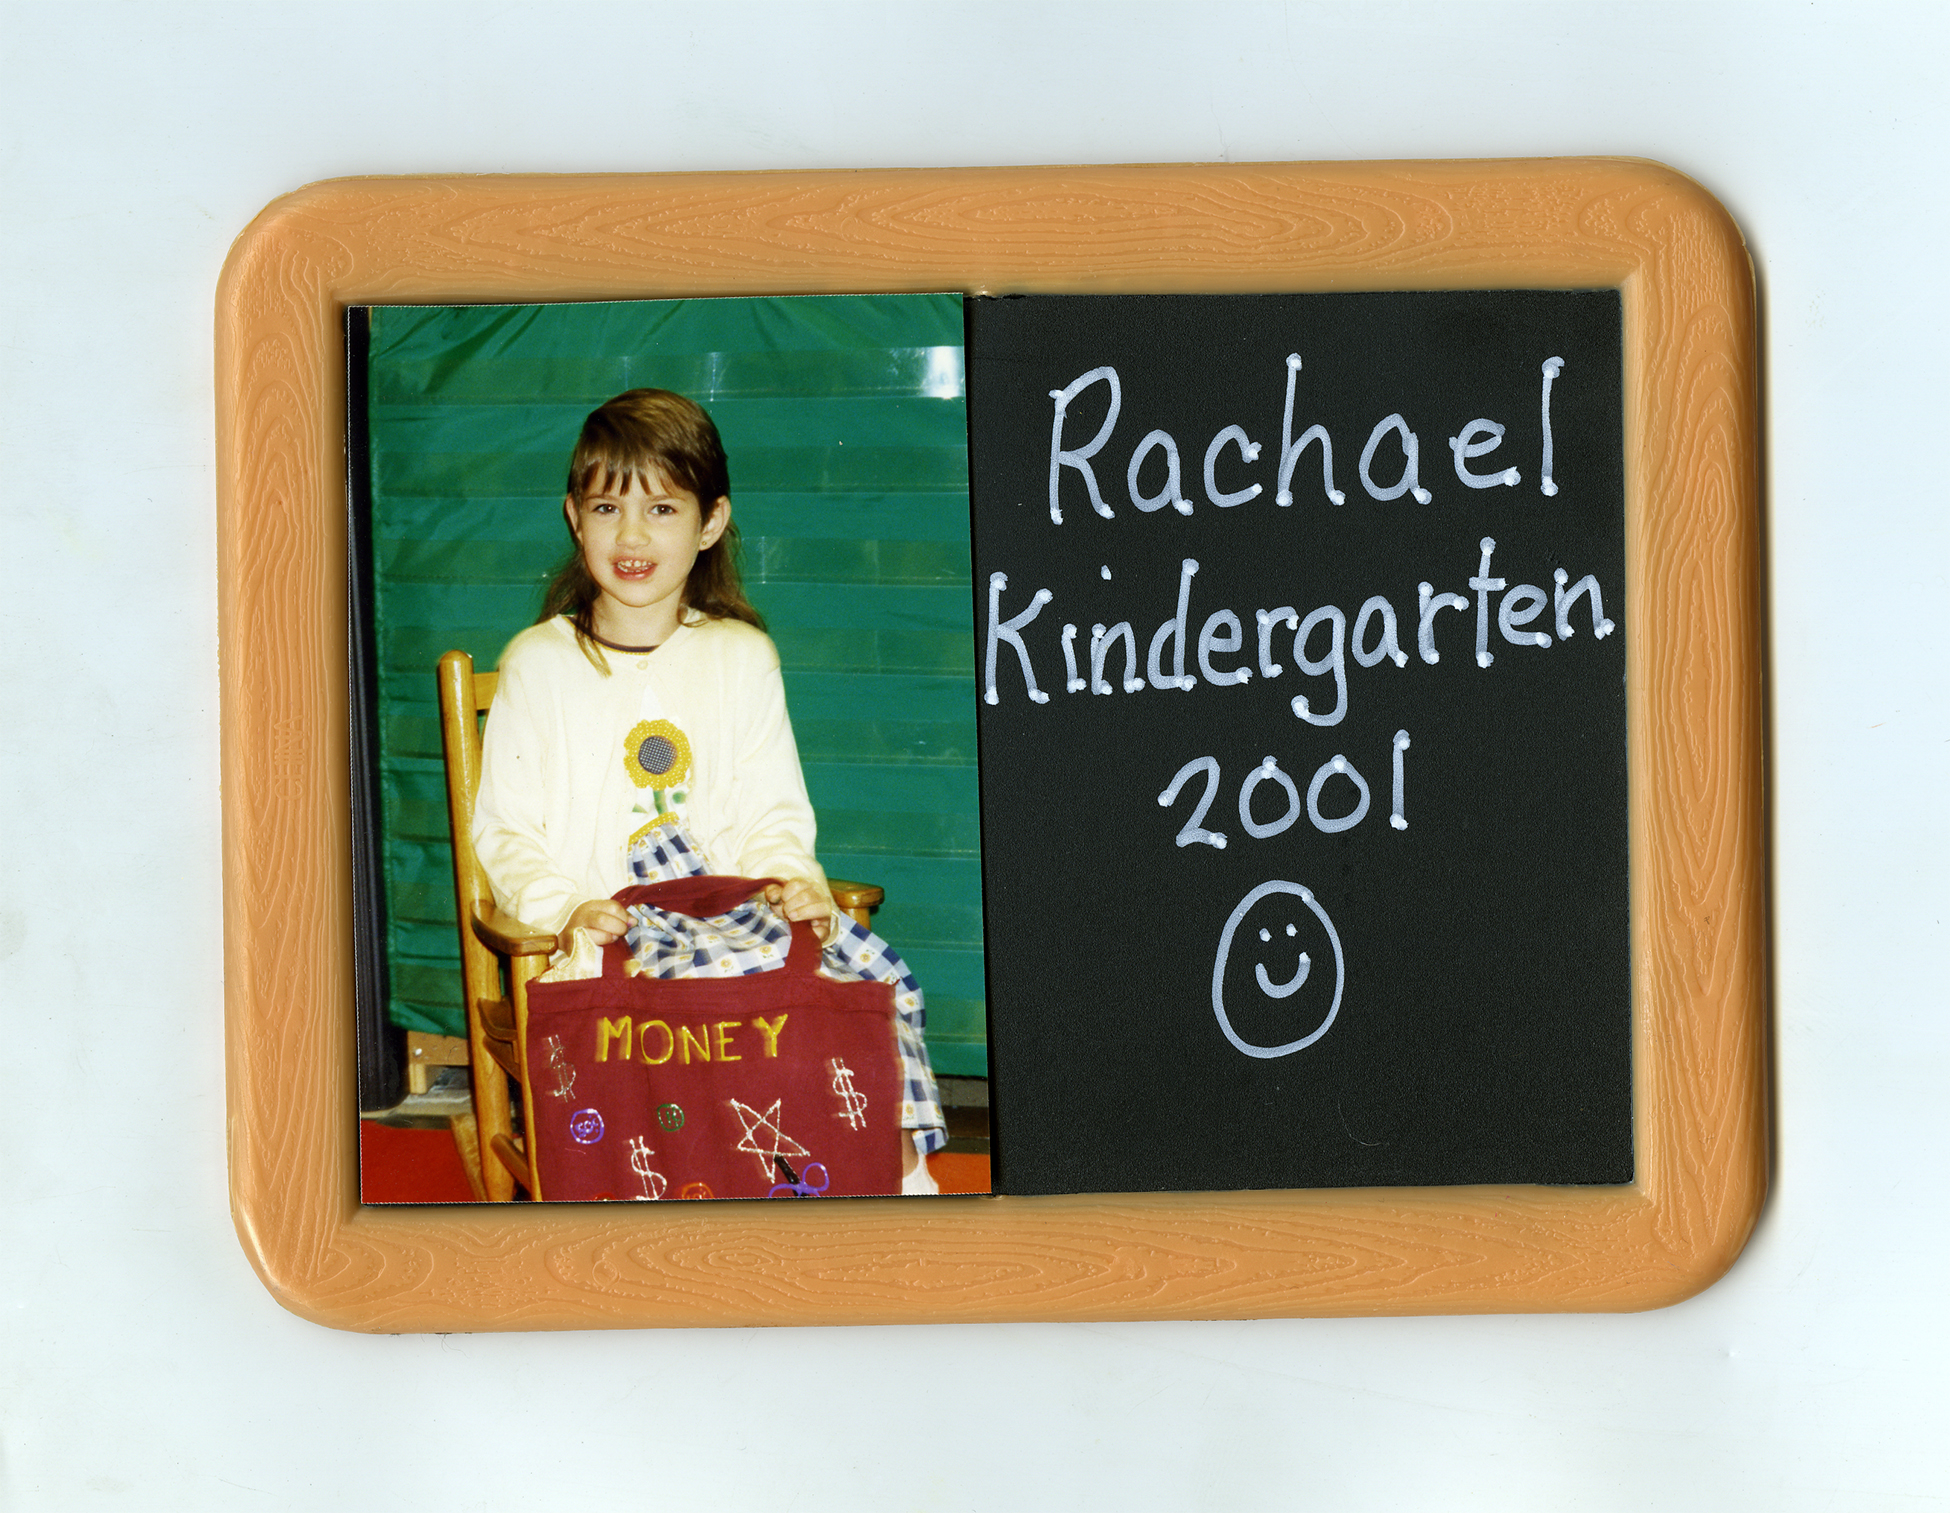 Rachael-Kindergarten.jpg